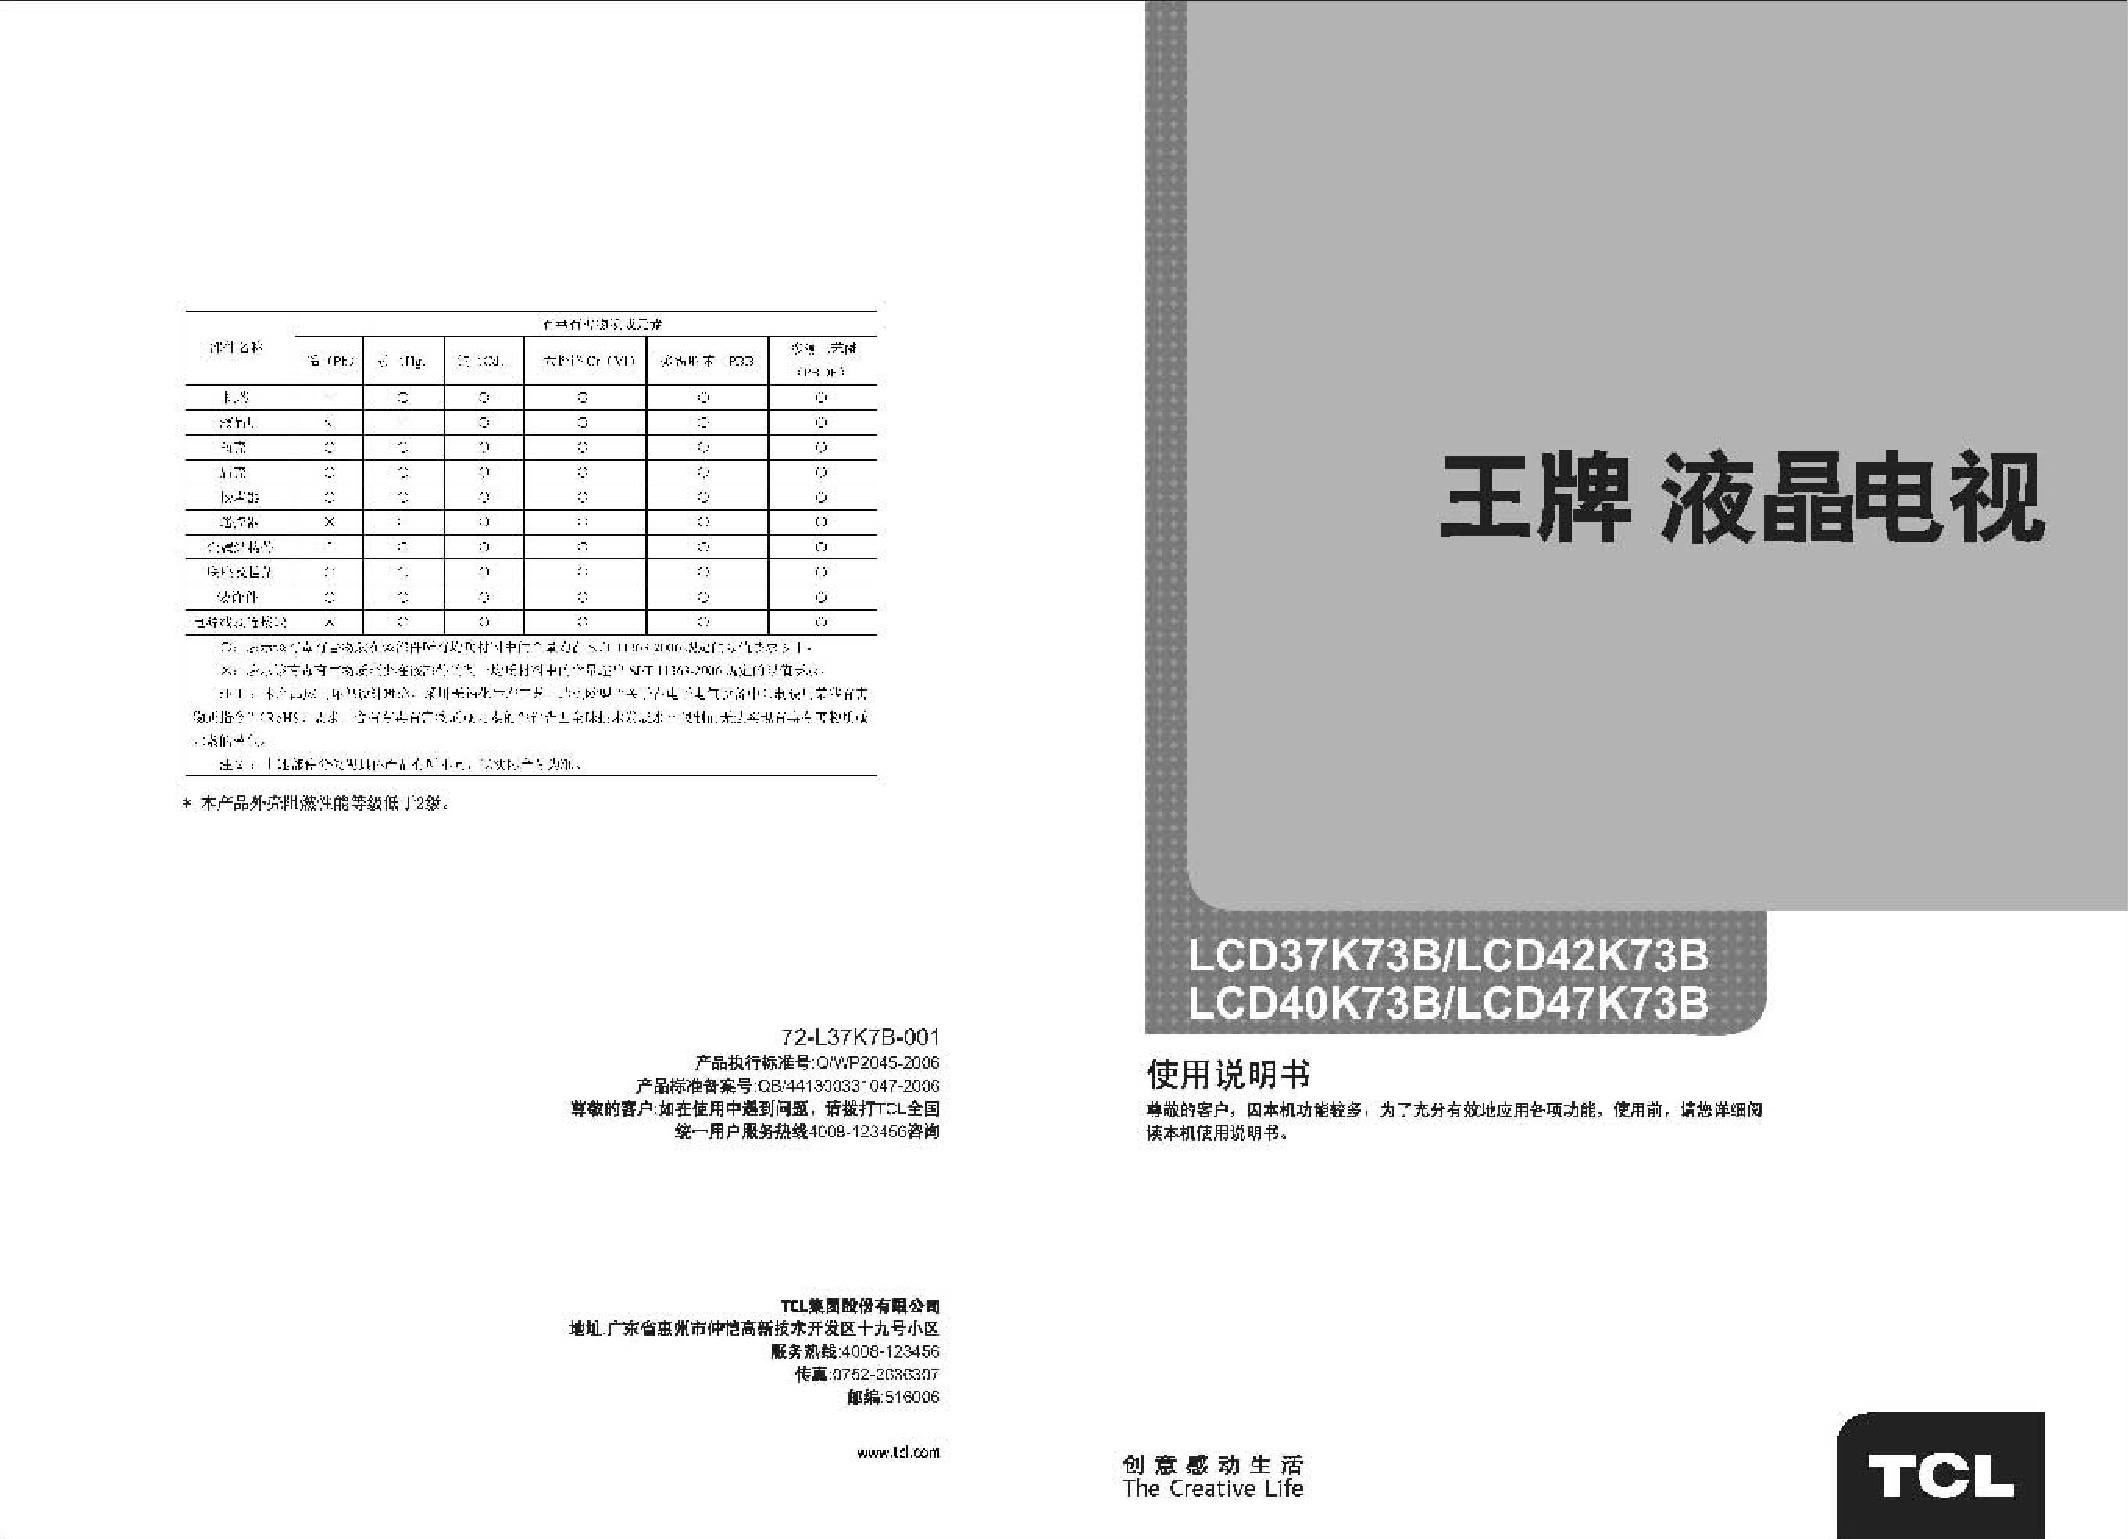 TCL LCD37K73B 使用说明书 封面